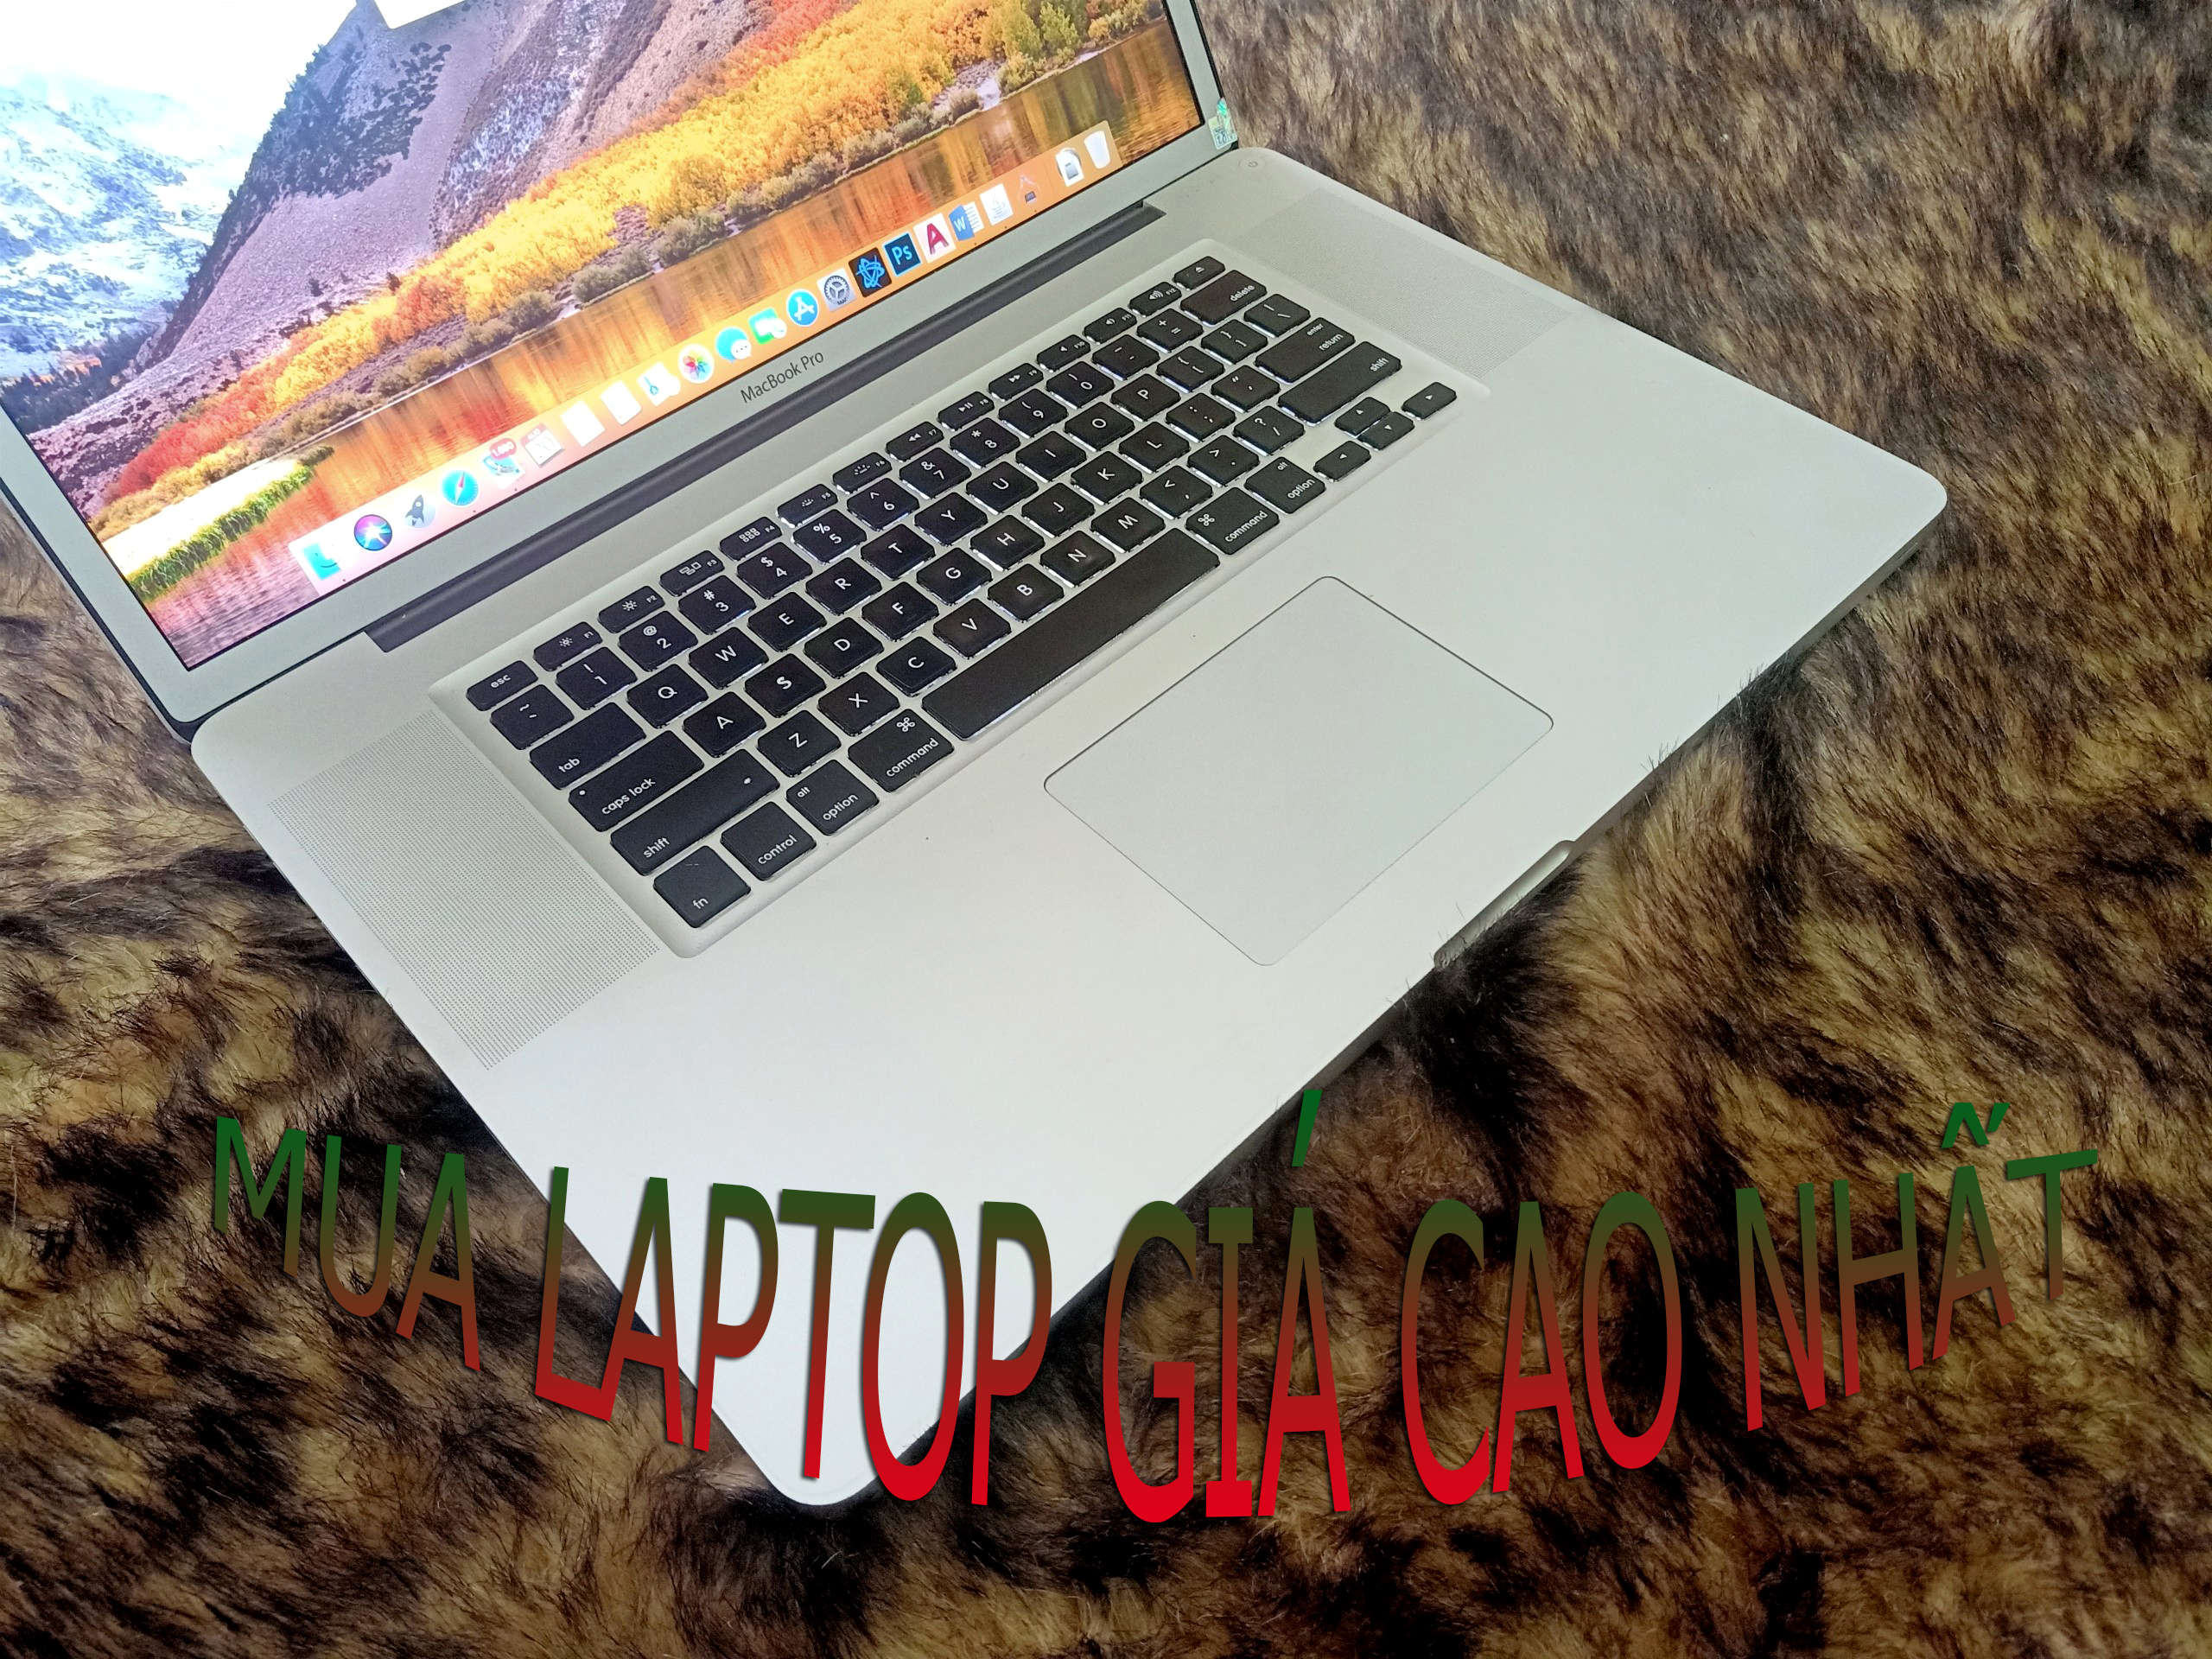 Thu Mua Laptop Cũ Giá Cao Tại Quận Tân Bình